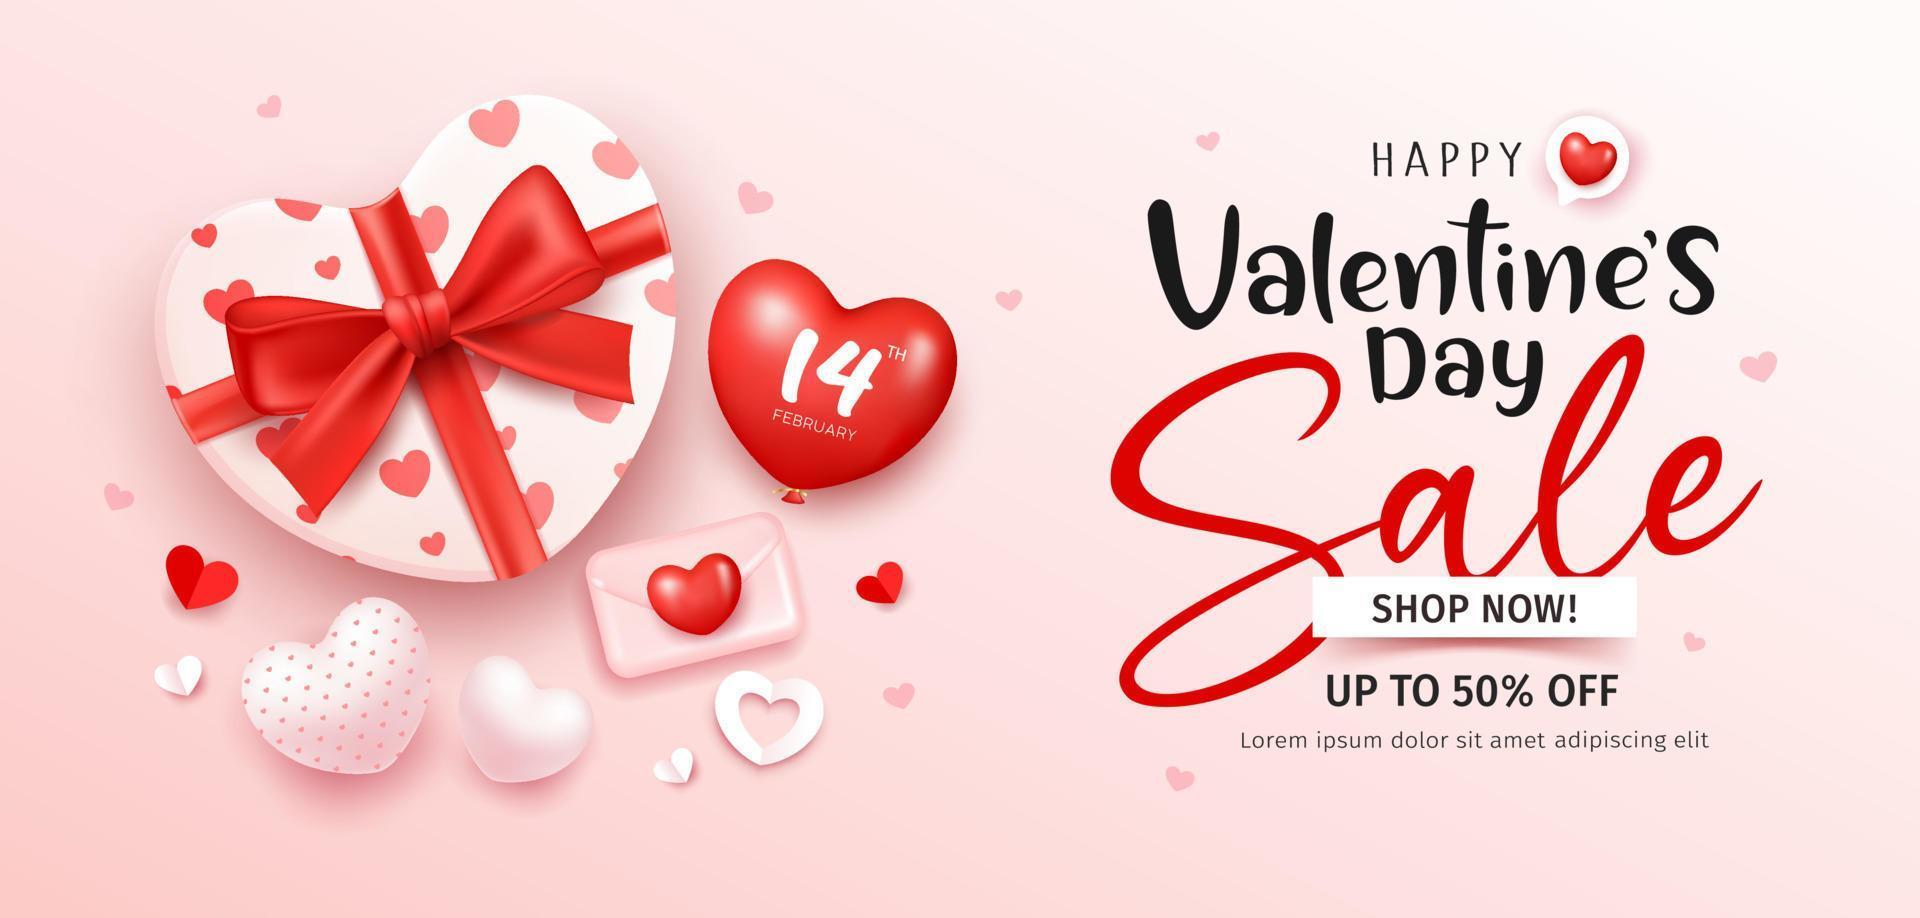 Geschenk Box Herz gestalten rot Band, glücklich Valentinstag Tag Verkauf, mit Ballon Herz Banner Design auf Rosa Hintergrund, eps10 Vektor Illustration.